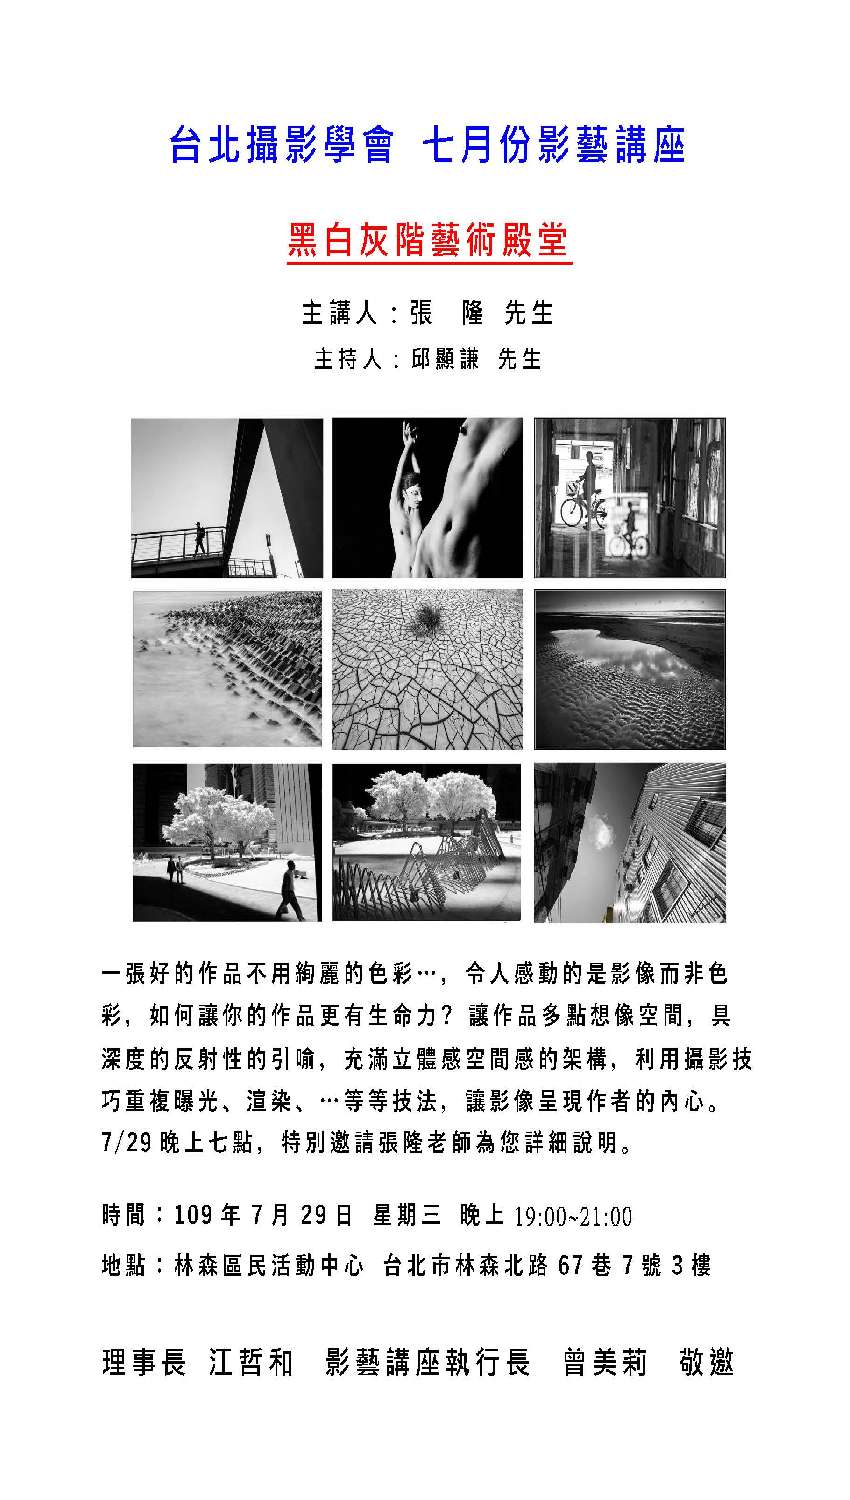 台北攝影學會 七月影